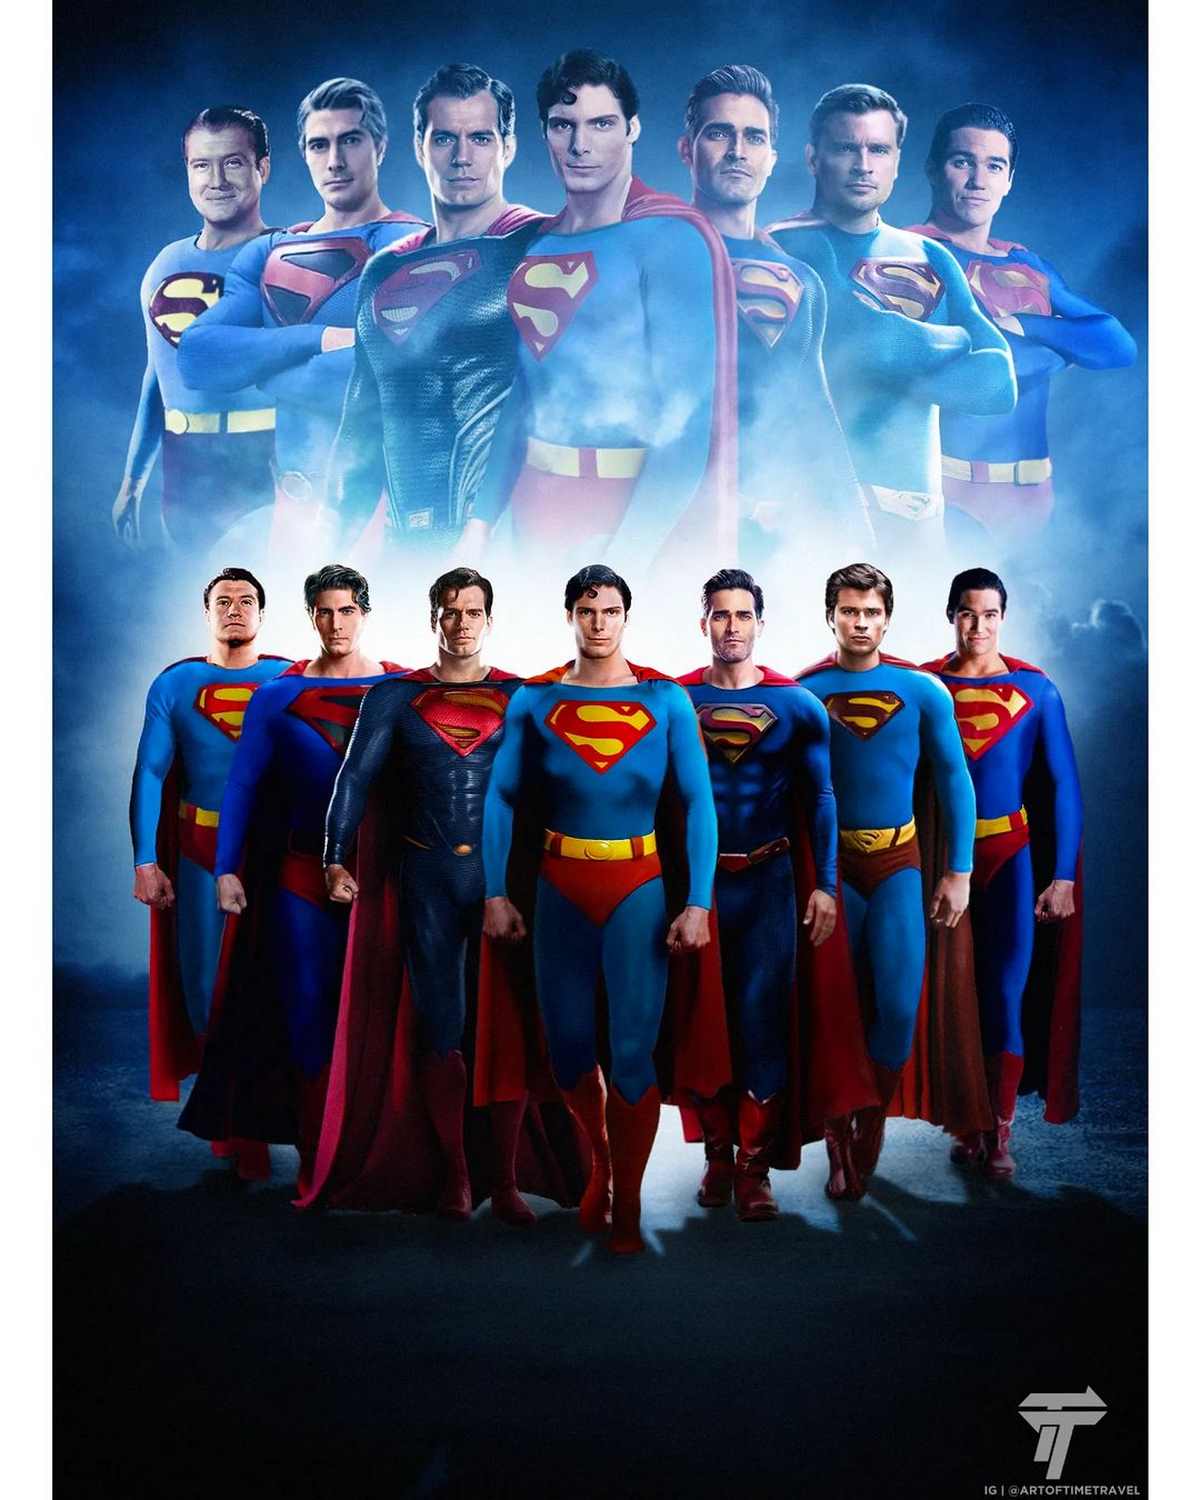 فن آرت کراس اور 7 سوپرمن در کنار یکدیگر